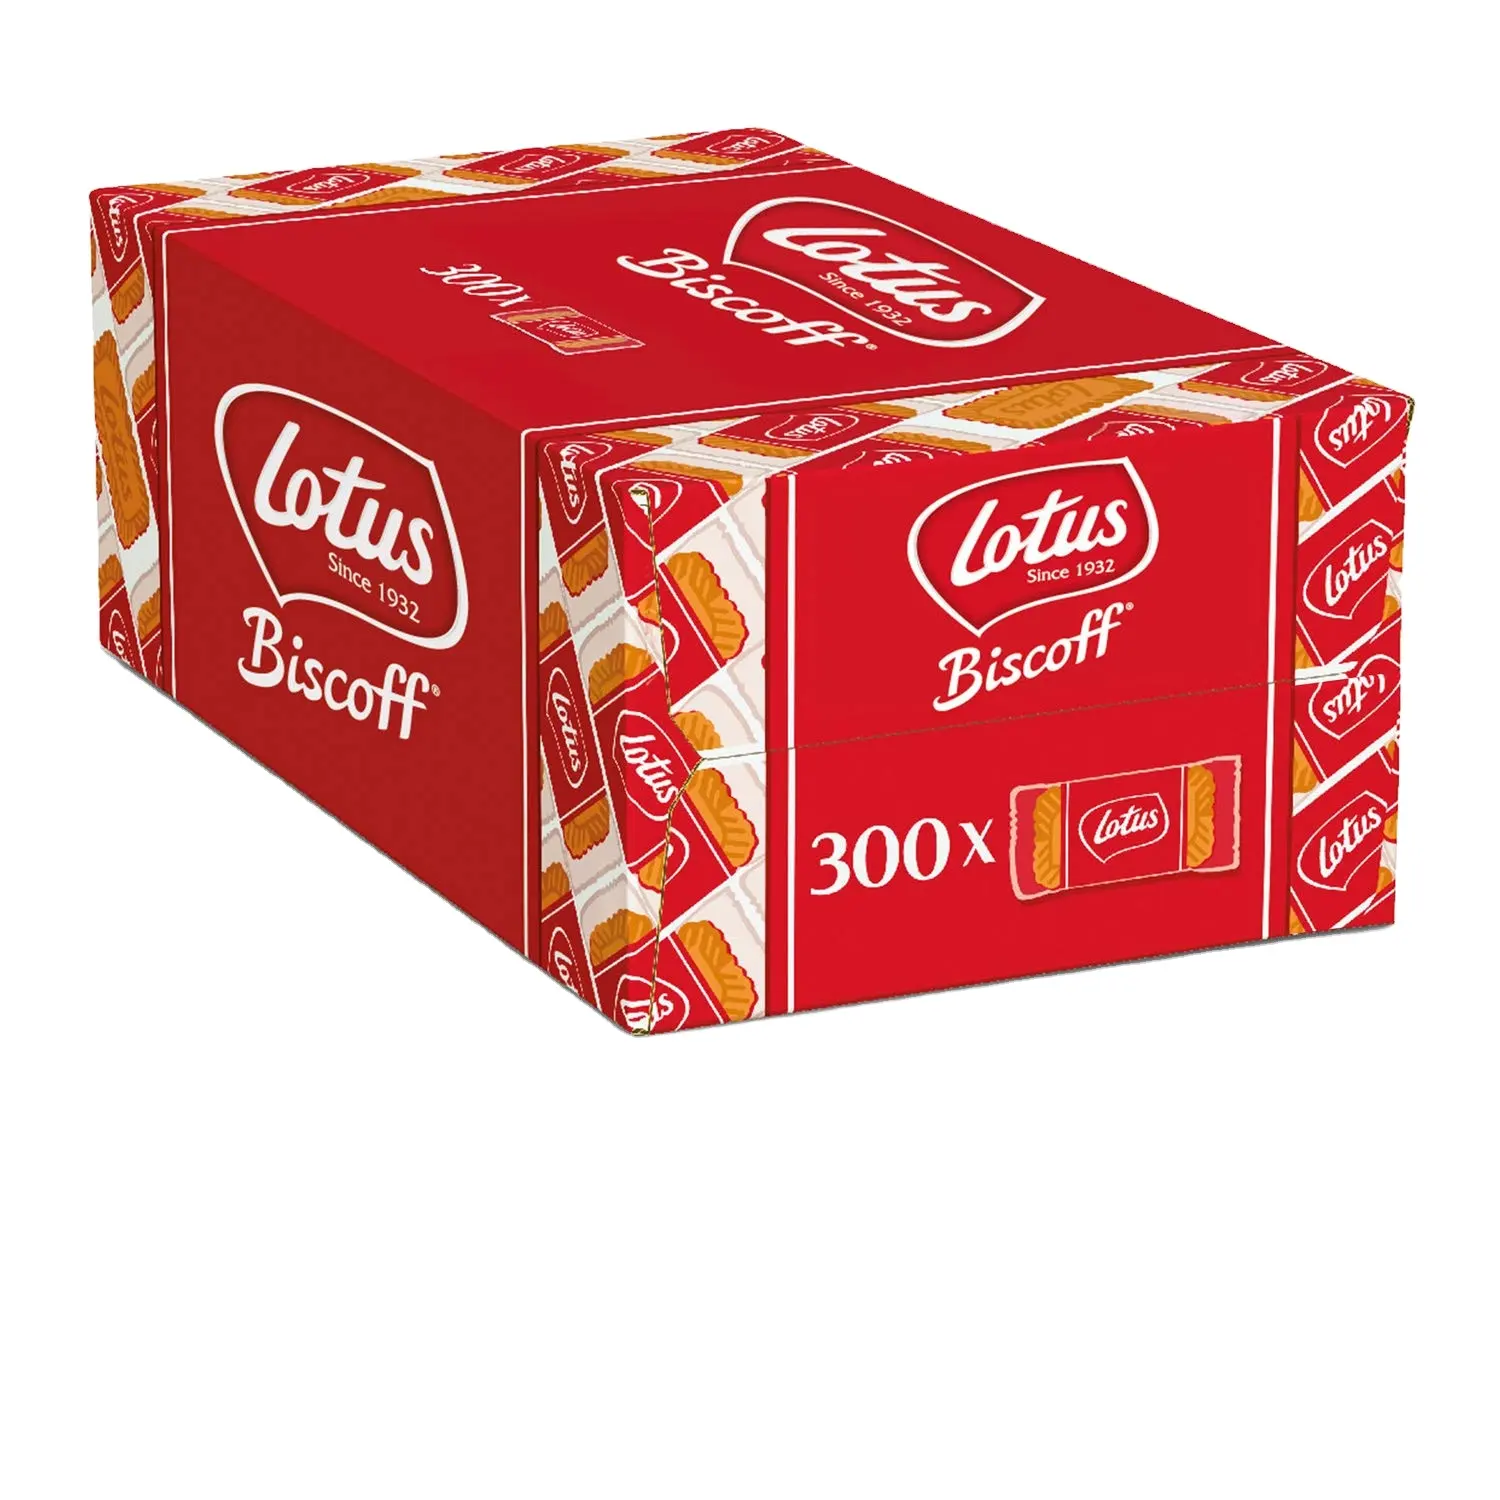 Lotus Biscoff - European Biscuit Cookies 100 count box